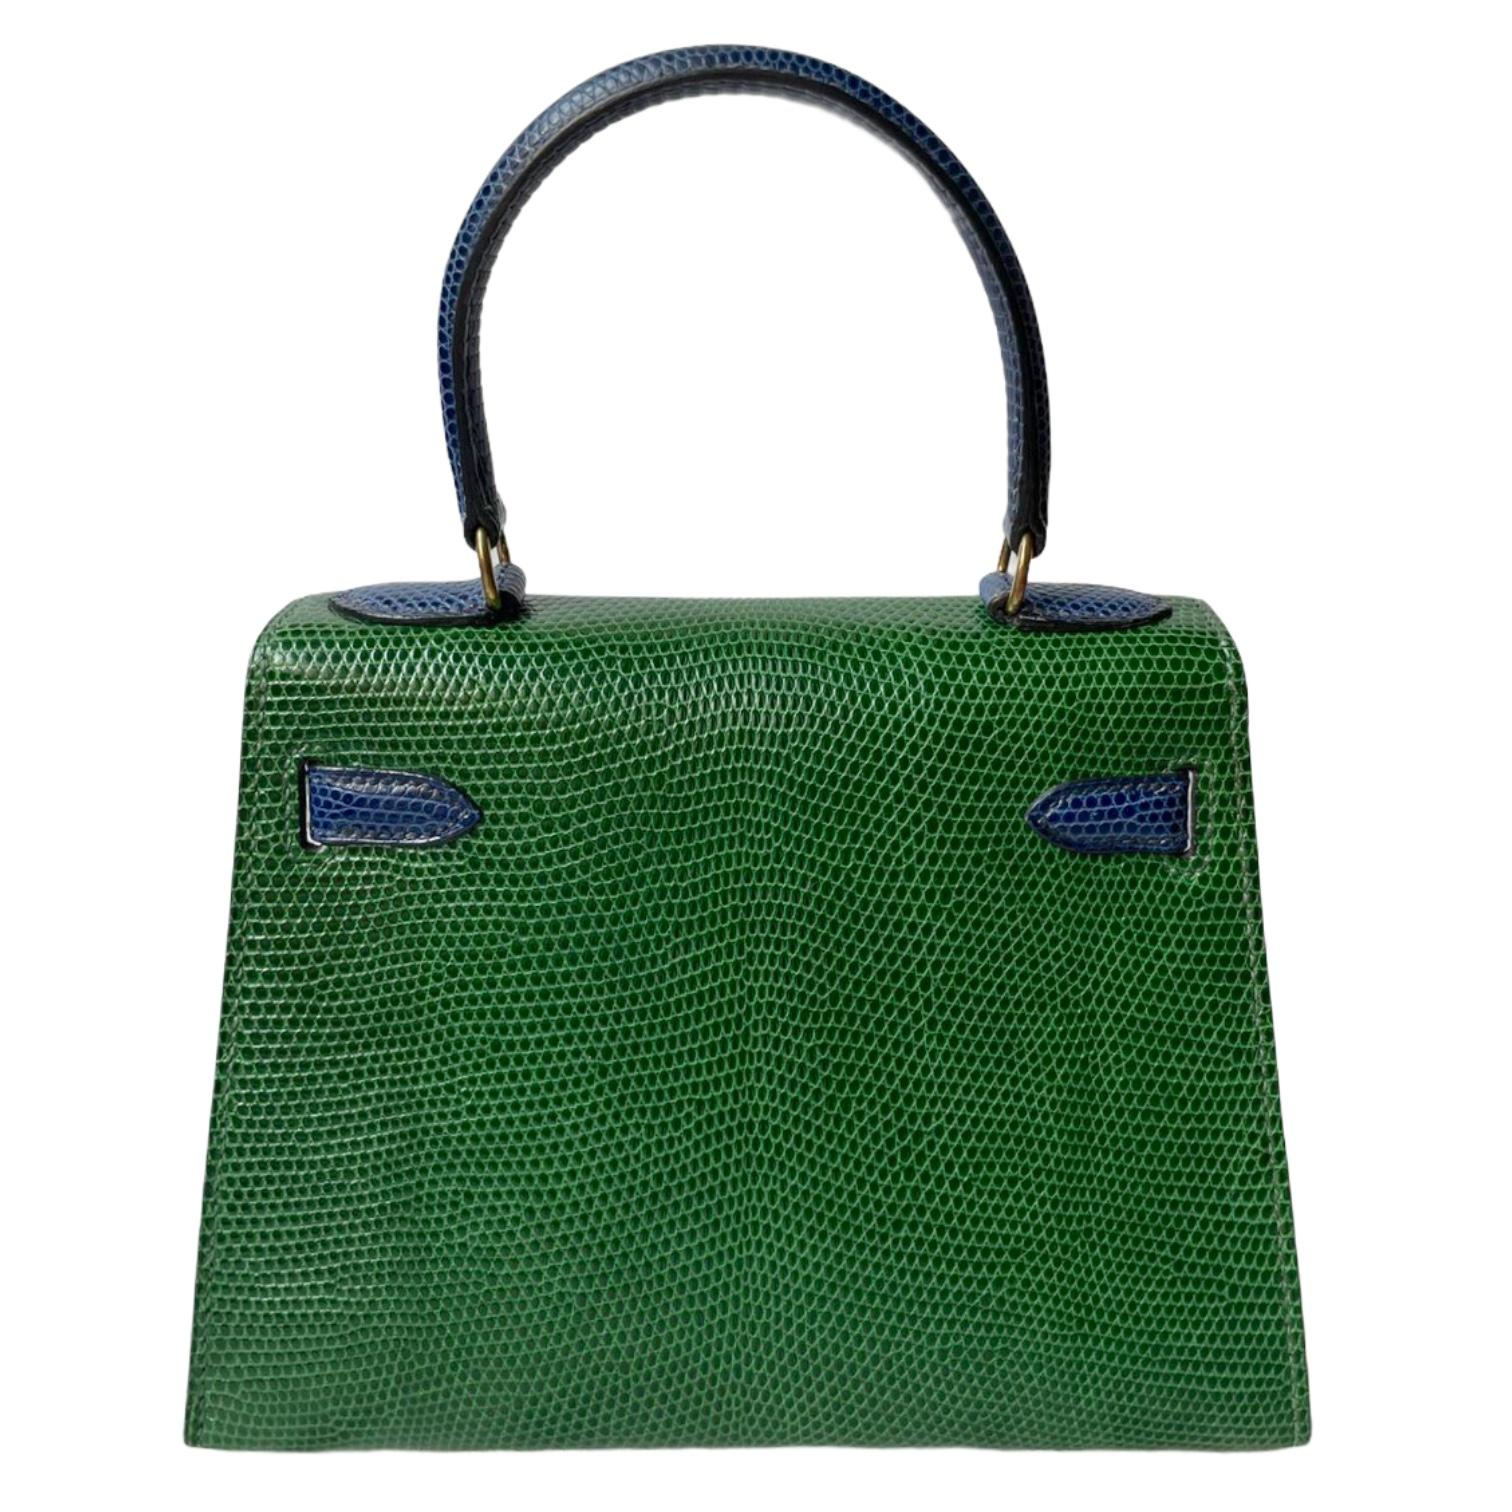 Hermès Kelly 20cm Tri-color Vert Moyen, Blue Saphire, Rouge Lizard Gold Hardware 6